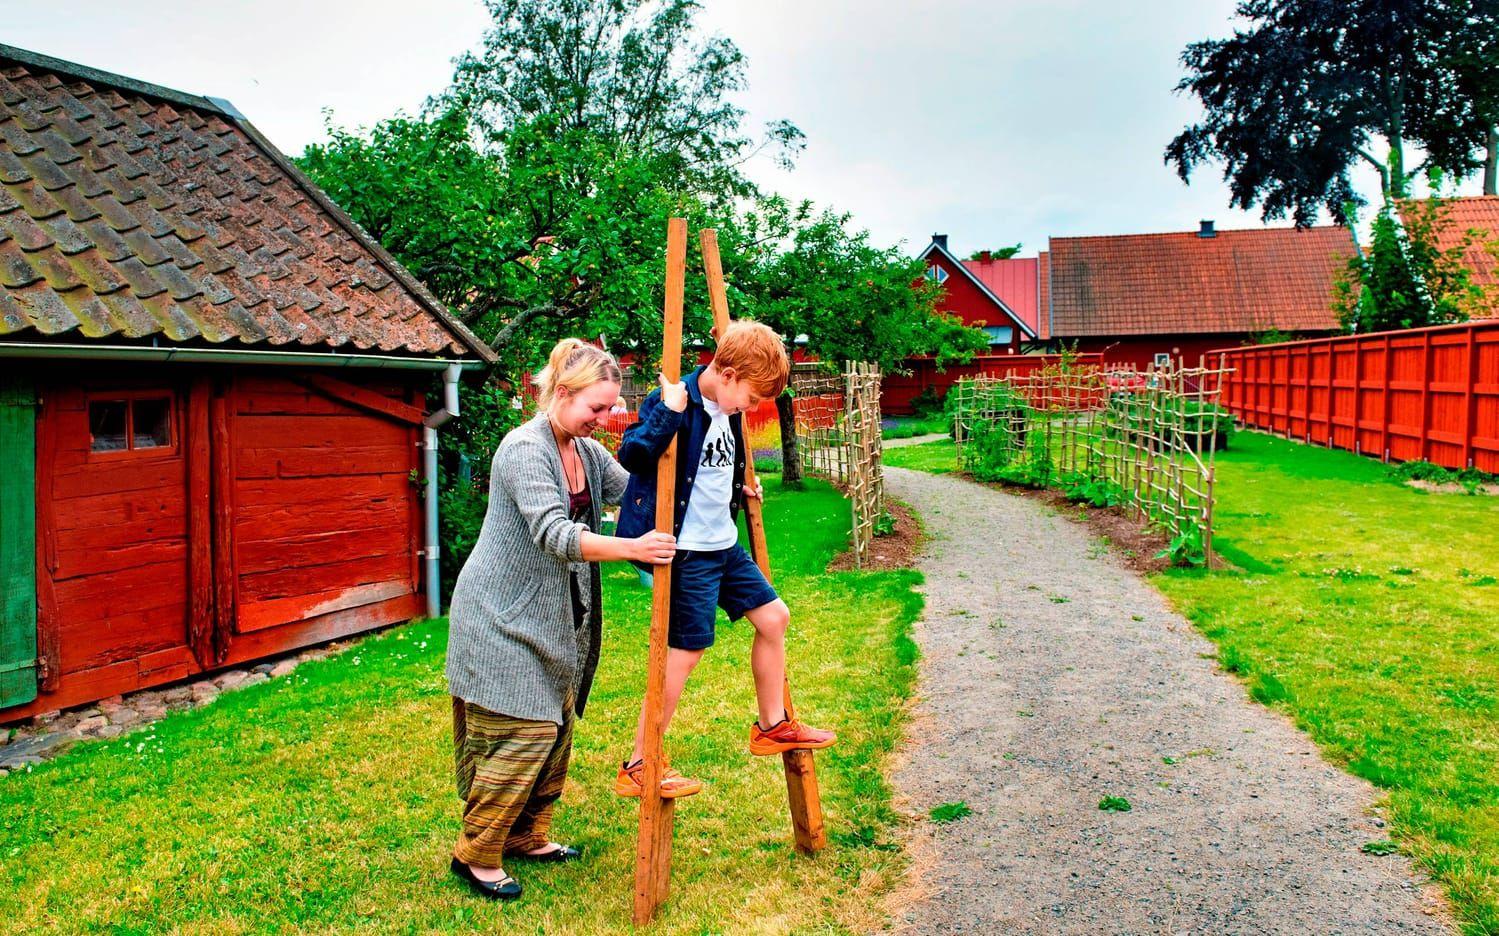 Vingligt. Ebbe Stenbeck får hjälp av Amanda Nord Axelsson att lära sig att gå på styltor. /Foto: Aline Lessner